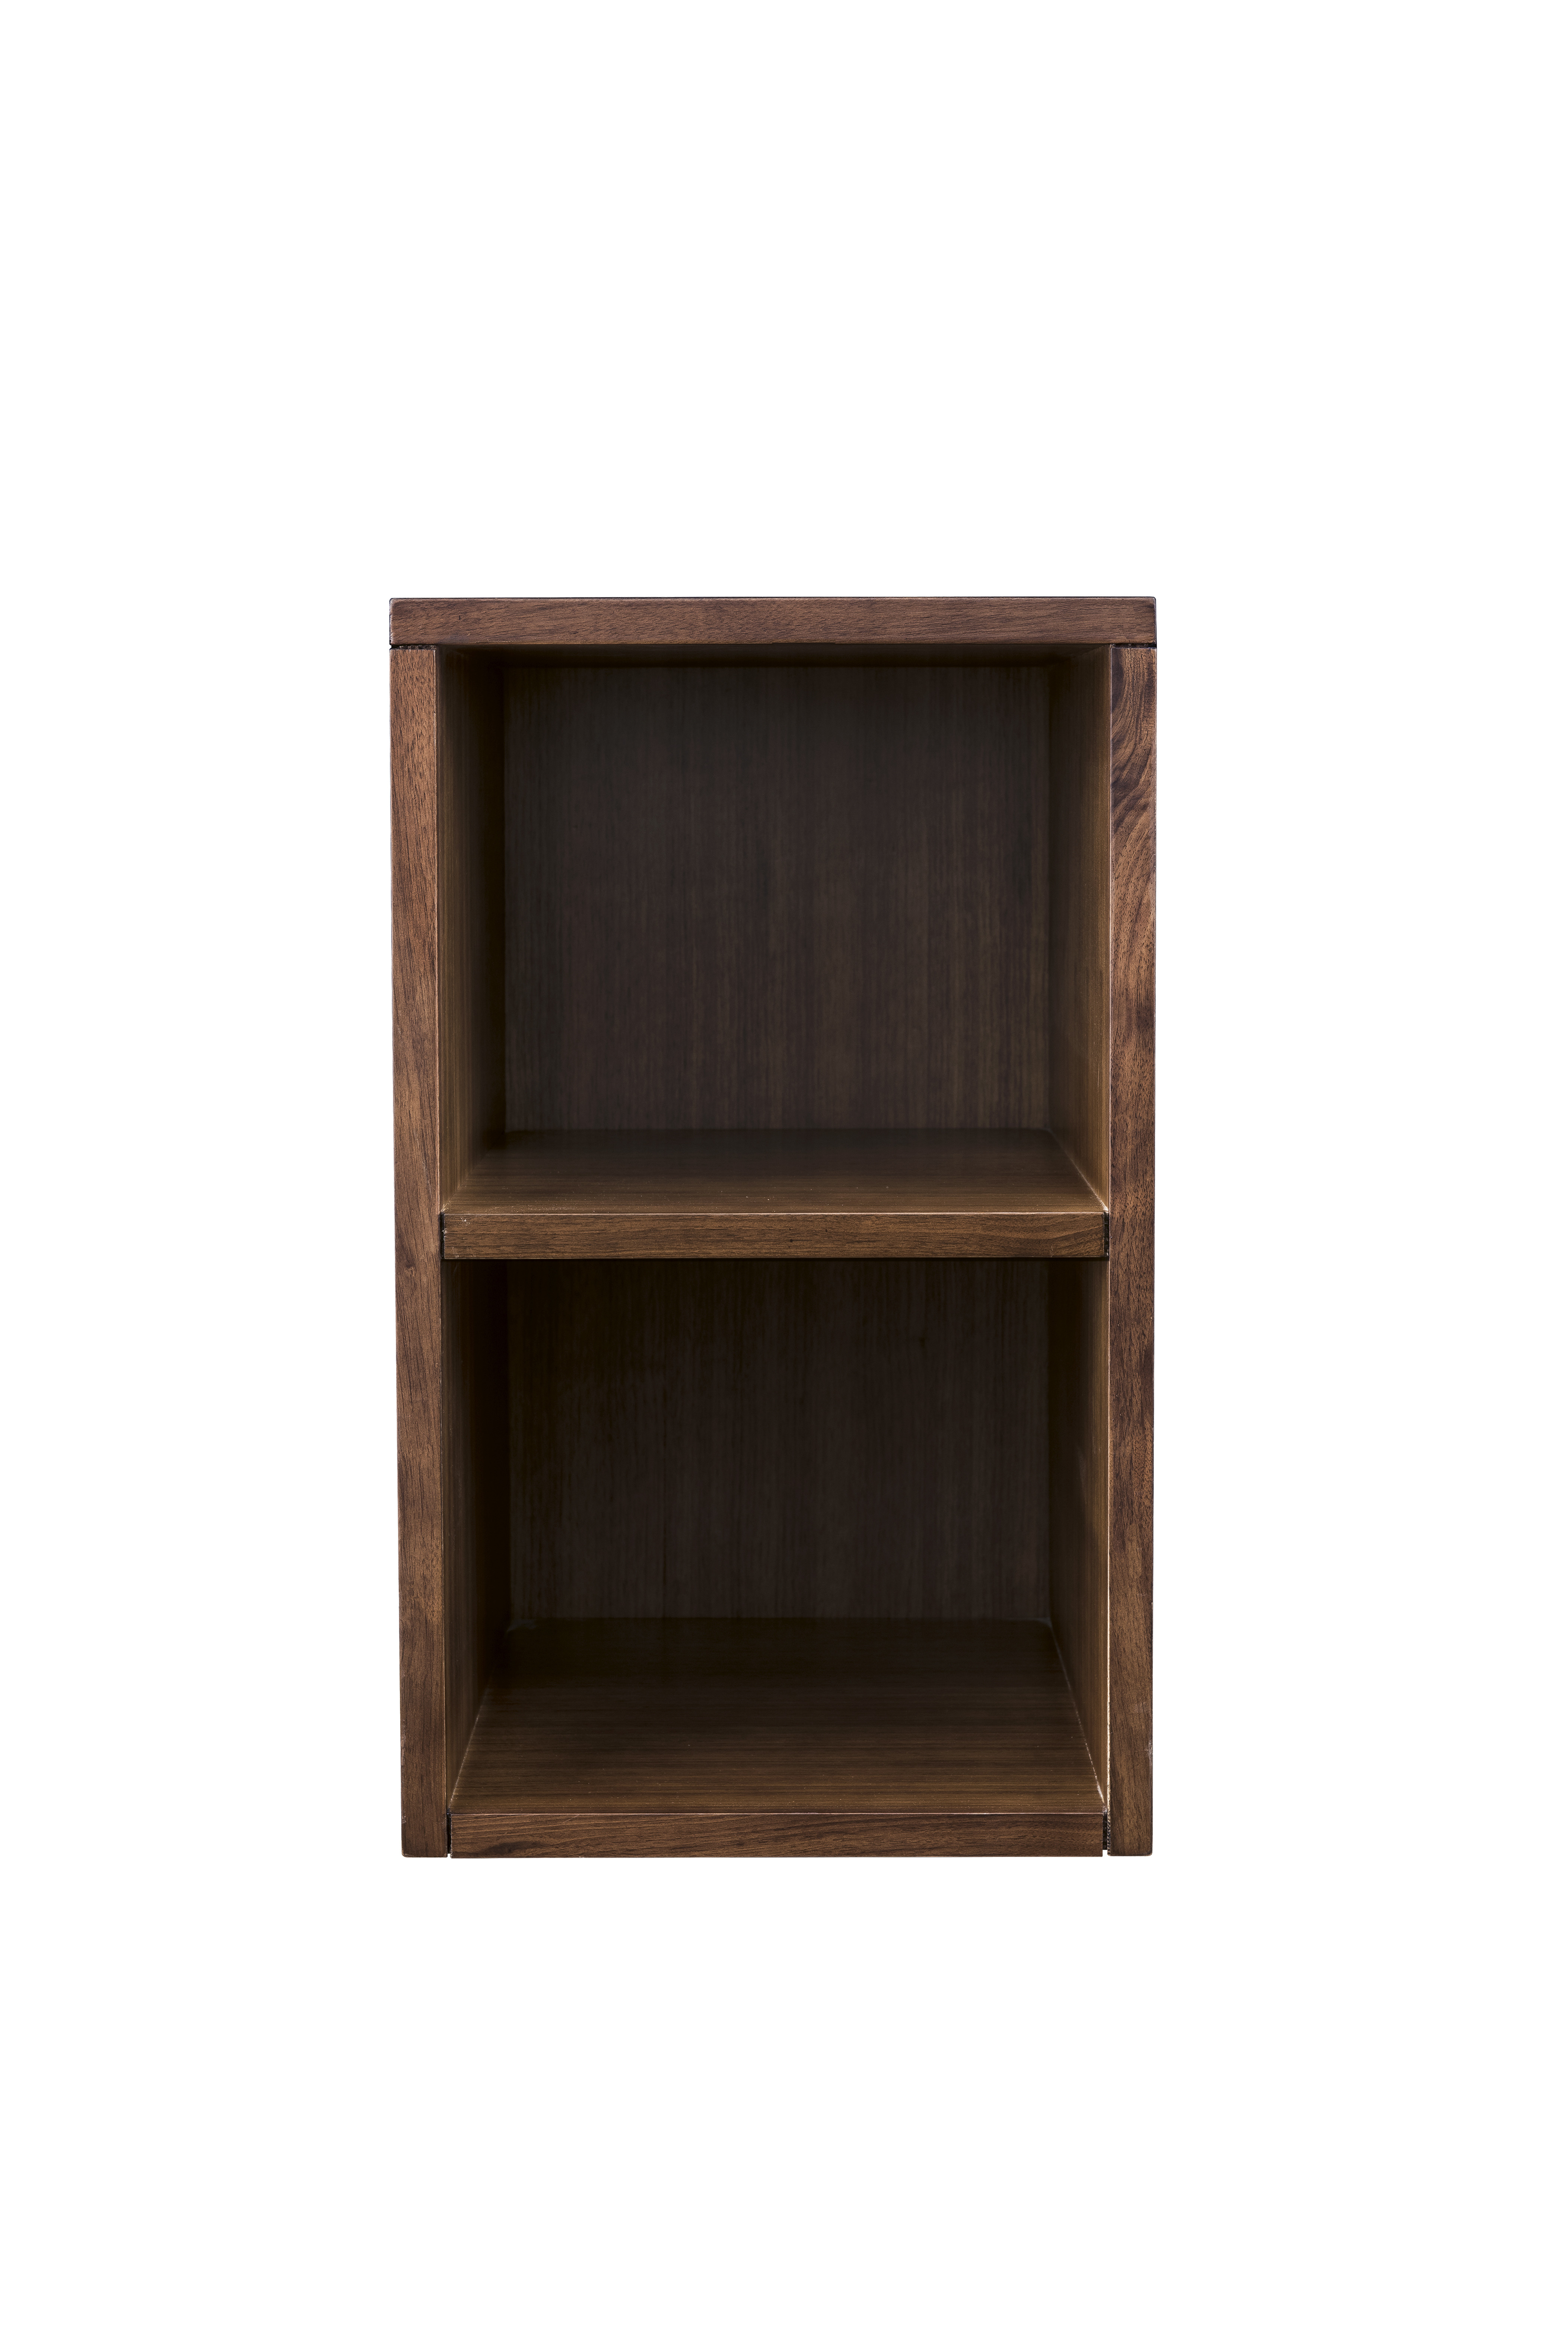 James Martin 803-SC1220-WLT Milan 12" Storage Cabinet (Short), Mid Century Walnut